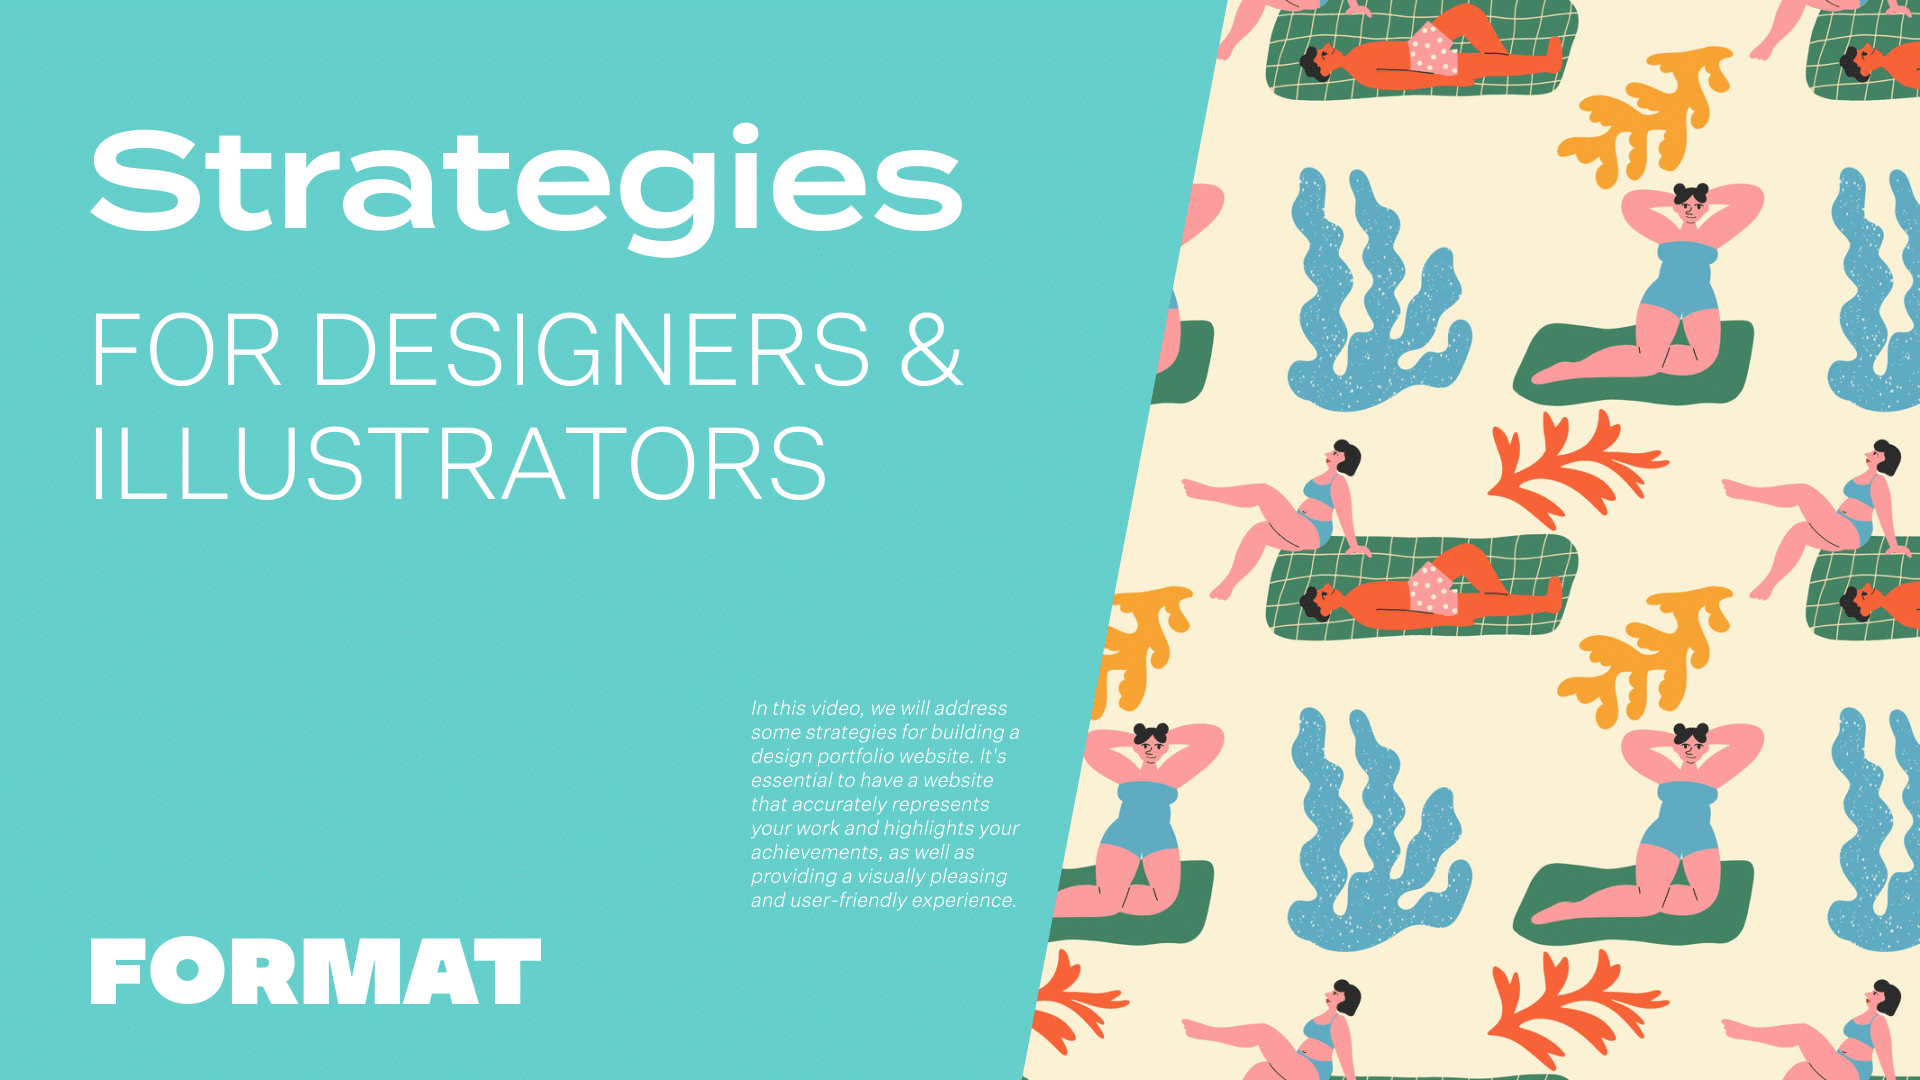 El texto de la imagen dice "Estrategias para diseñadores e ilustradores" y muestra una ilustración de gente en la playa